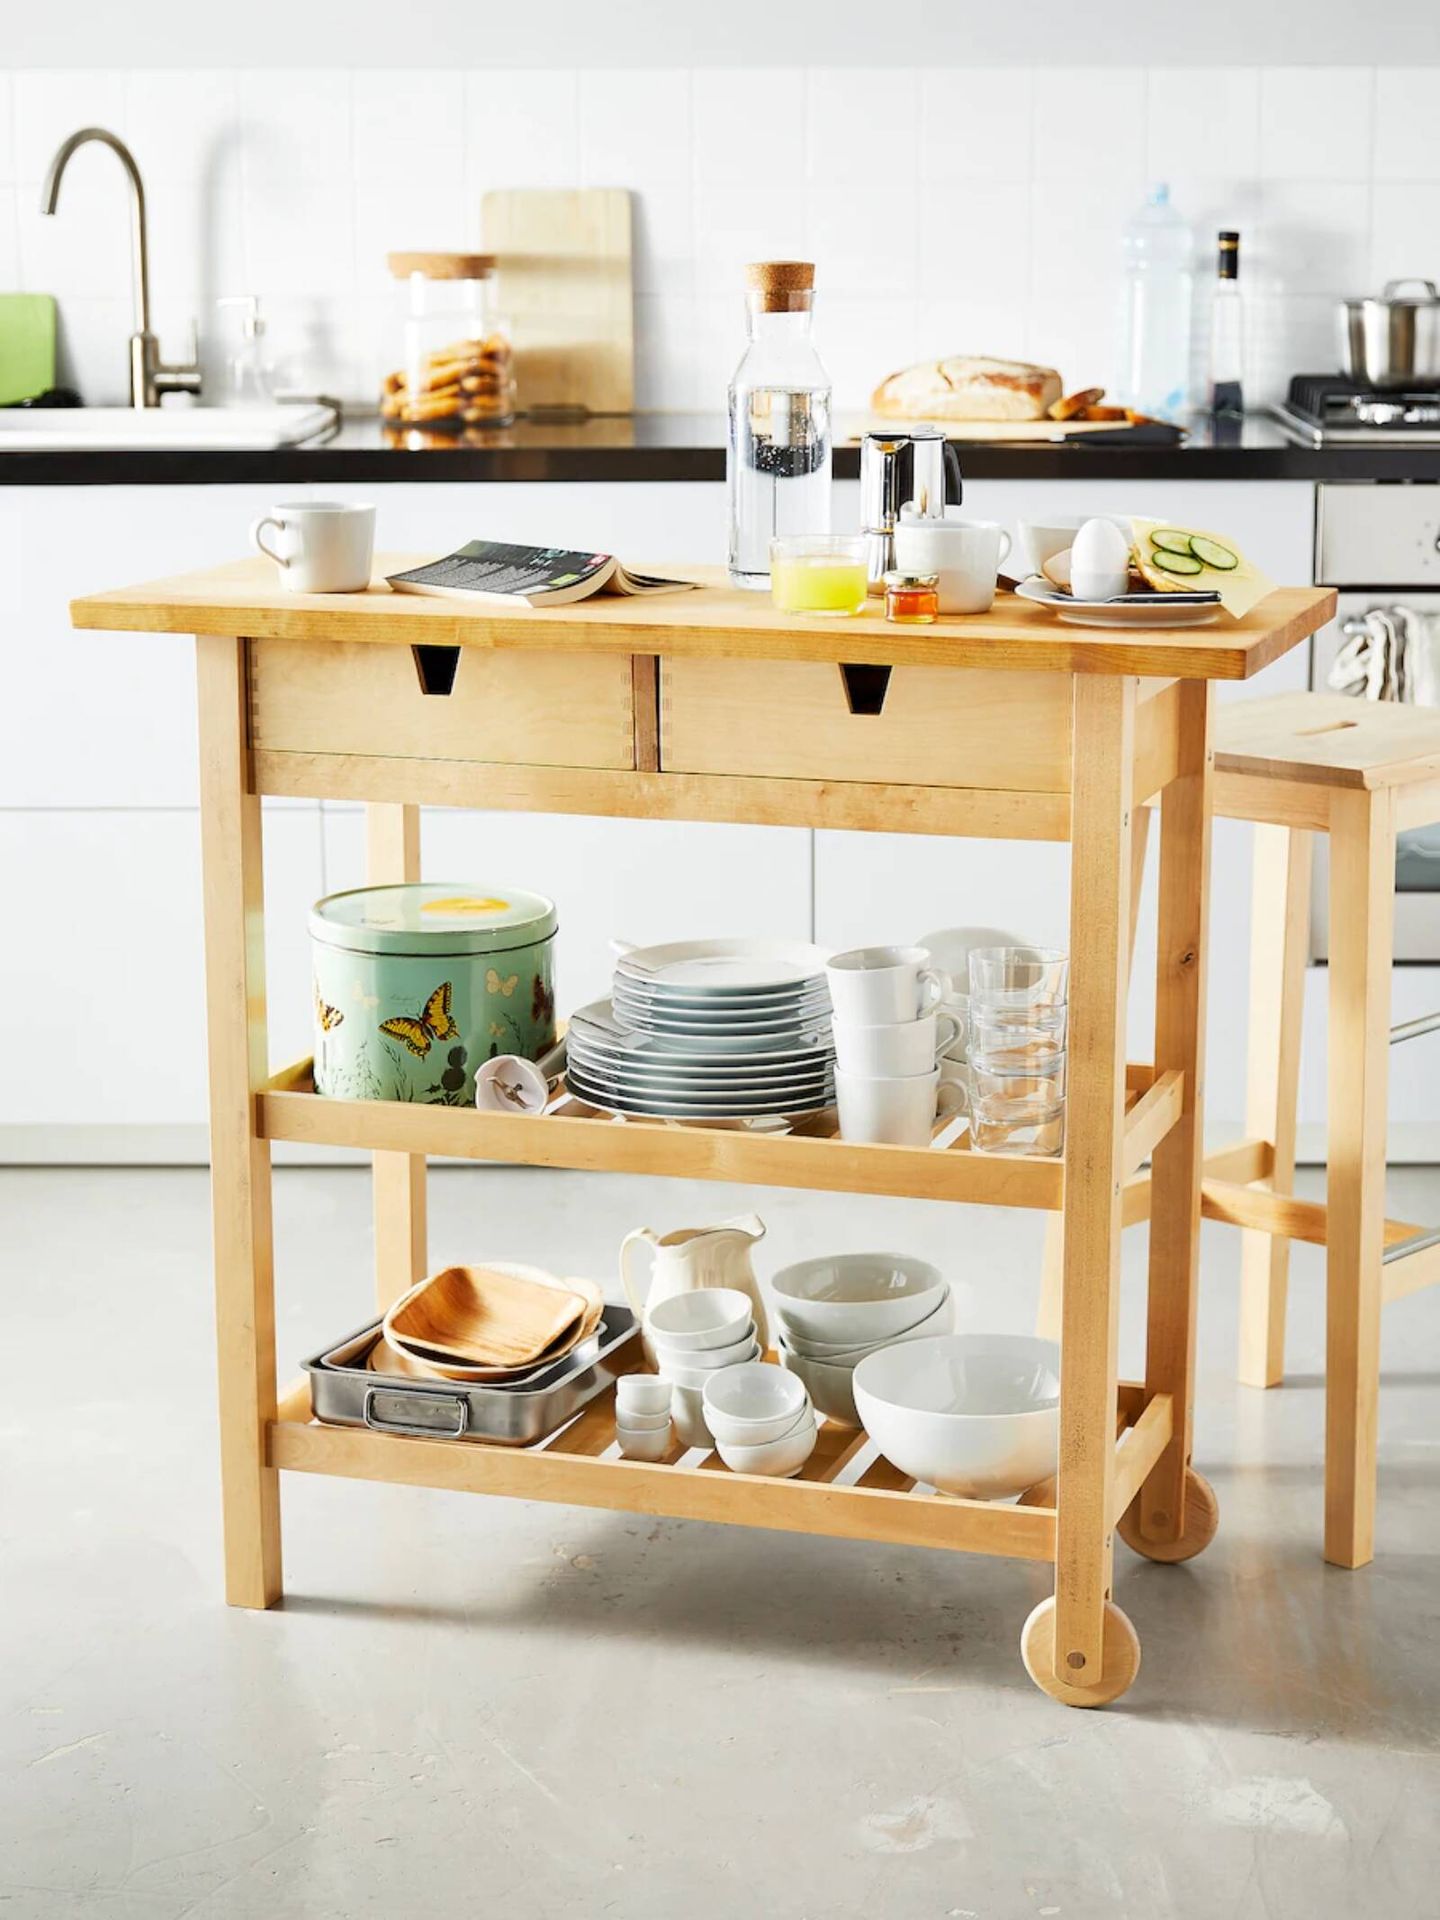 Ideas de Ikea para decorar una cocina pequeña y sacarle el mayor partido. (Cortesía)